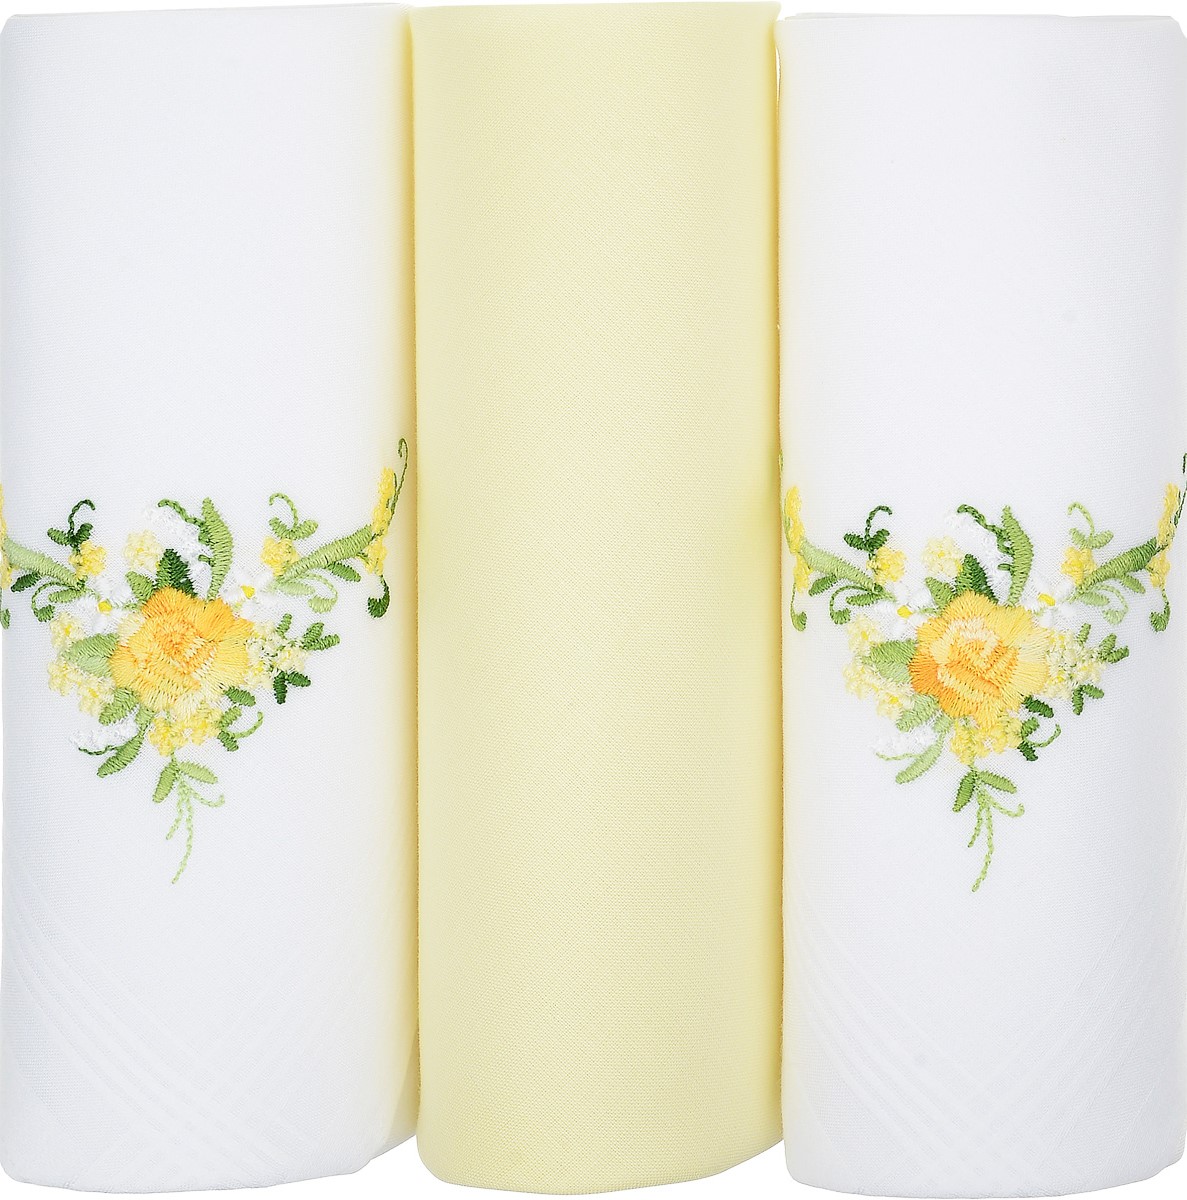 Платок носовой женский Zlata Korunka, цвет: белый, желтый, 3 шт. 25605-13. Размер 30 см х 30 см